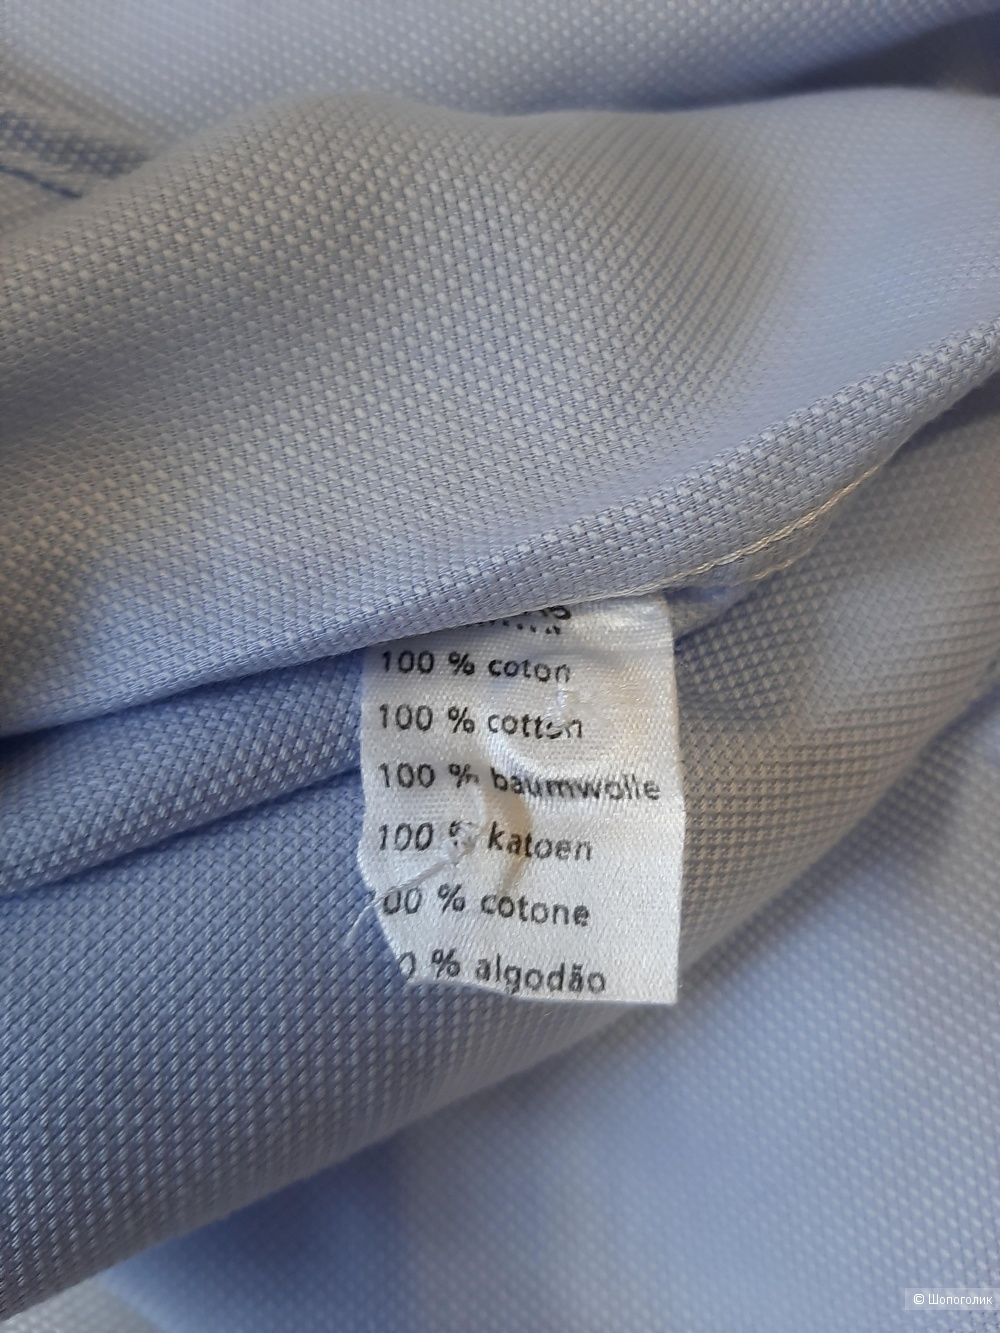 Рубашка Lacoste, размер М